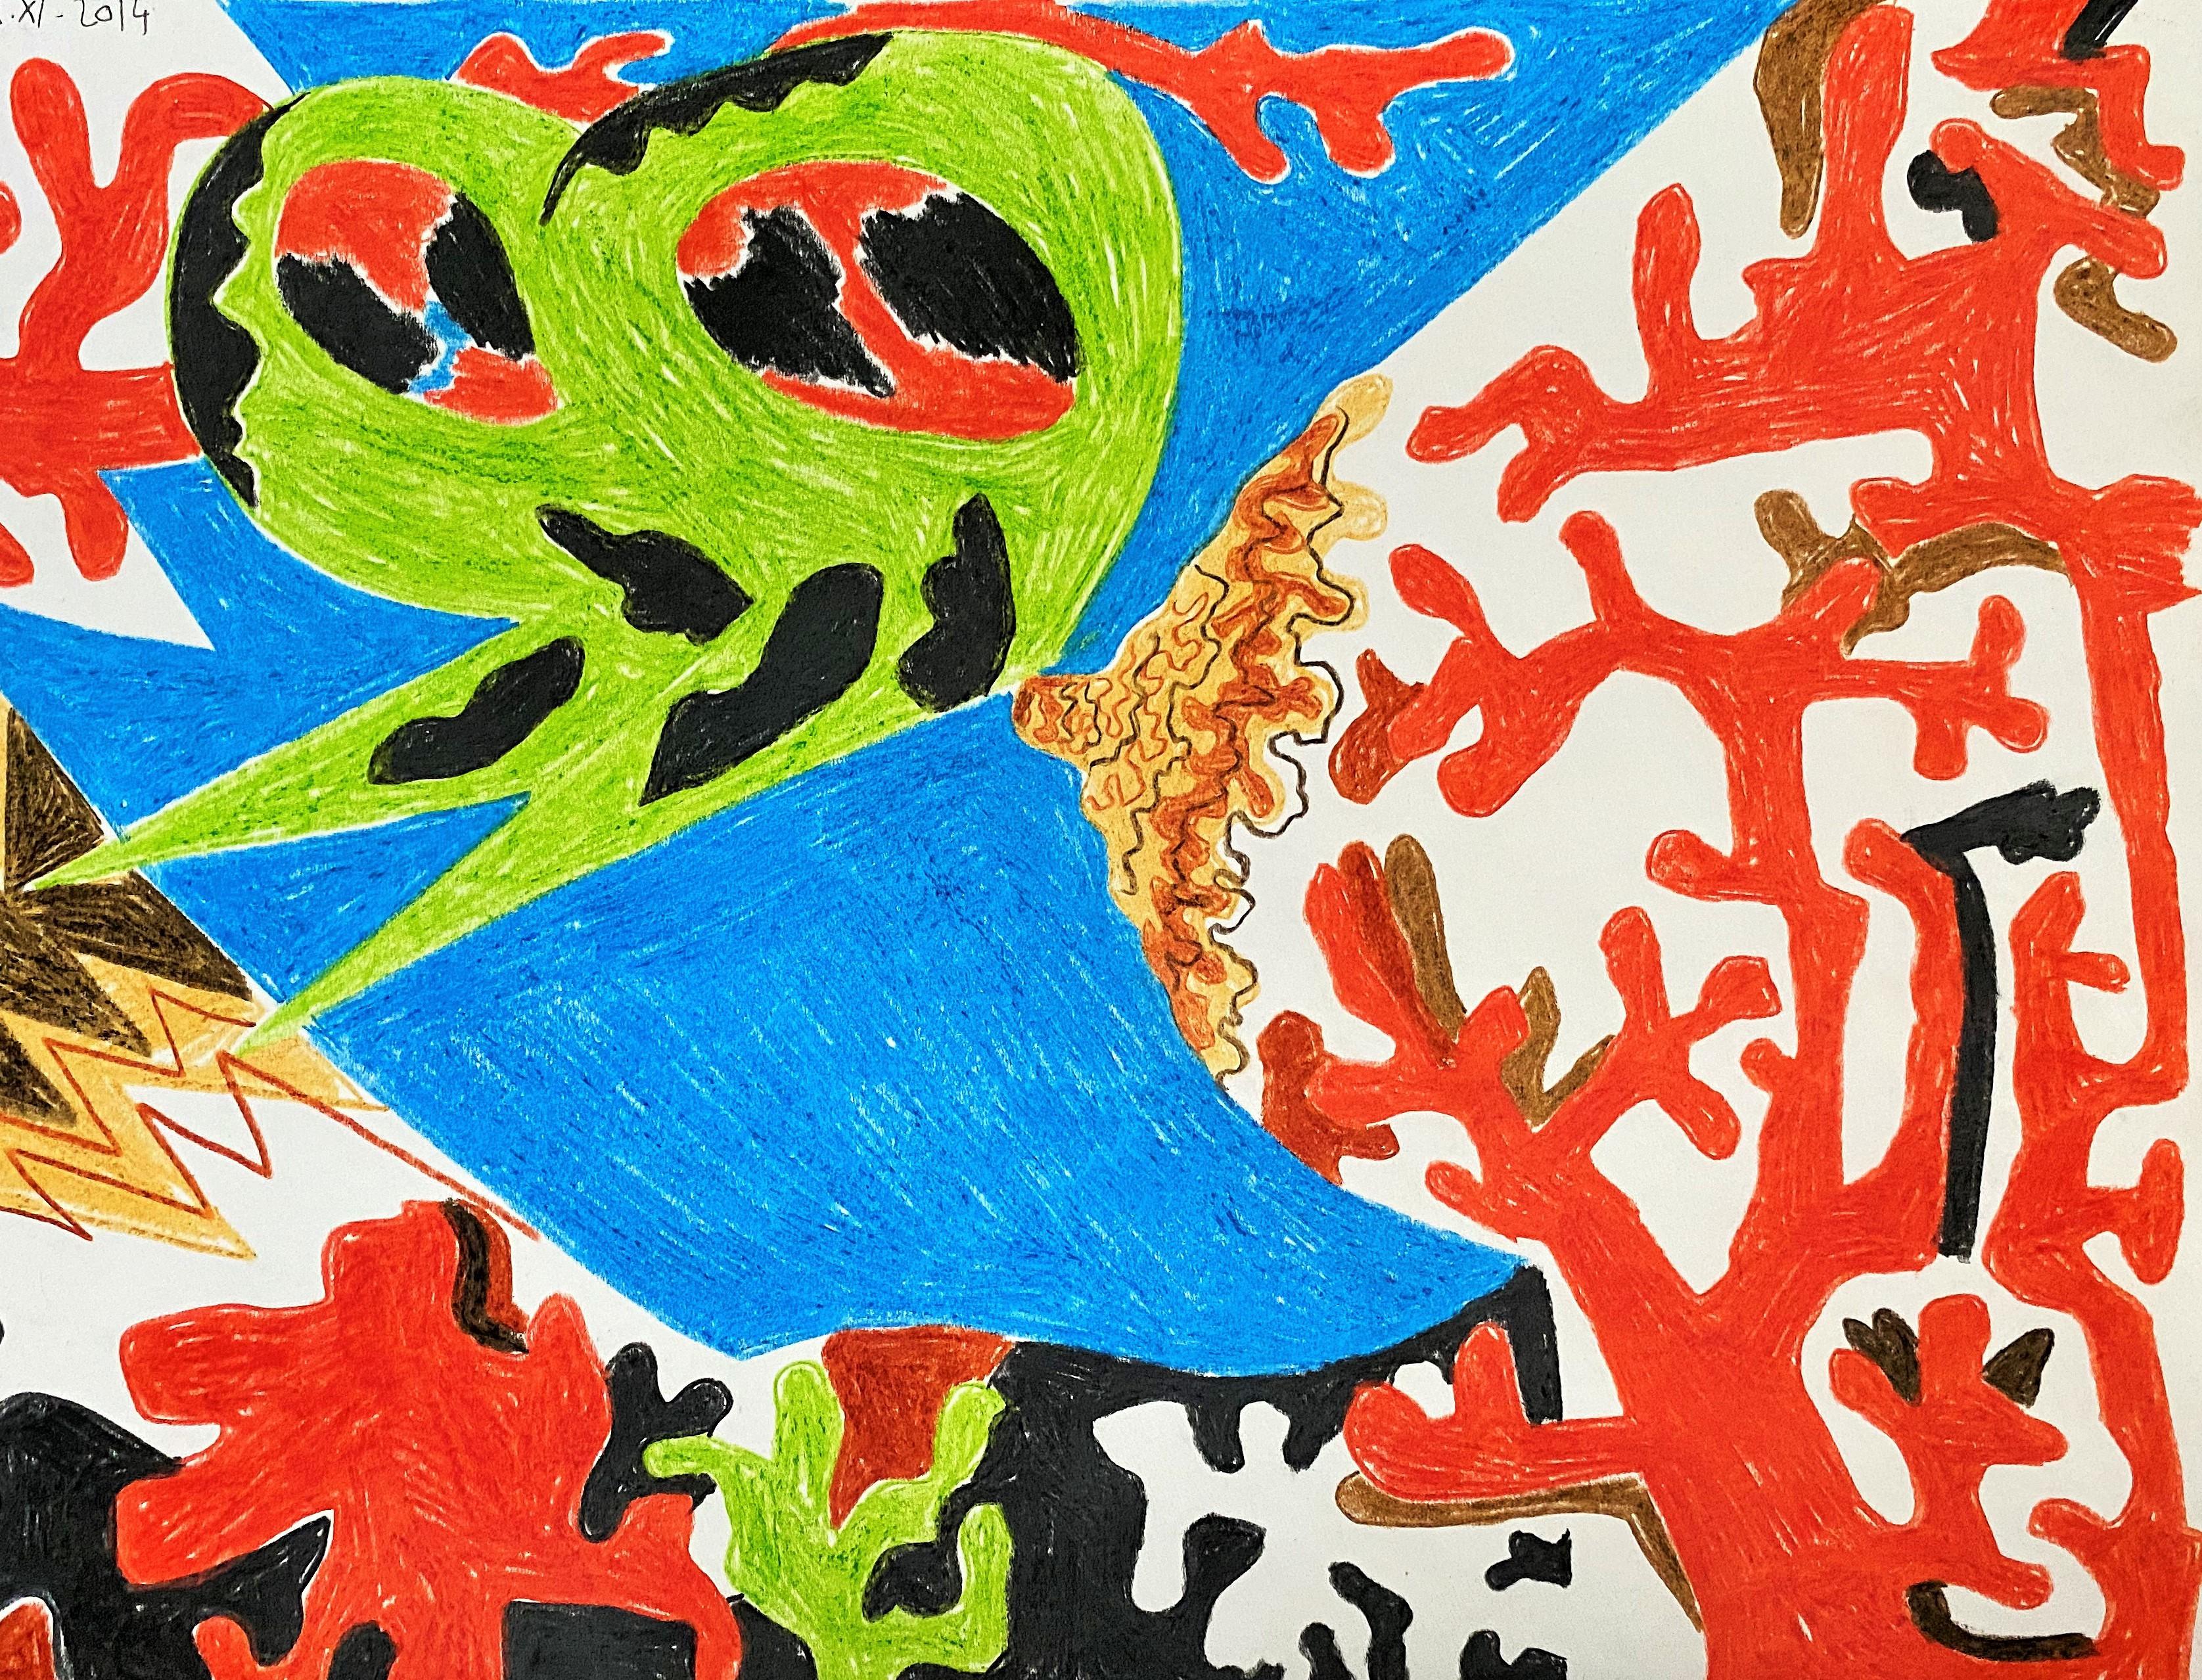 Island für Umberto 07 - Zeitgenössisch, Zeichnung, Rot, Grün, Blau, Schmetterling (Beige), Landscape Art, von Alexandru Rădvan